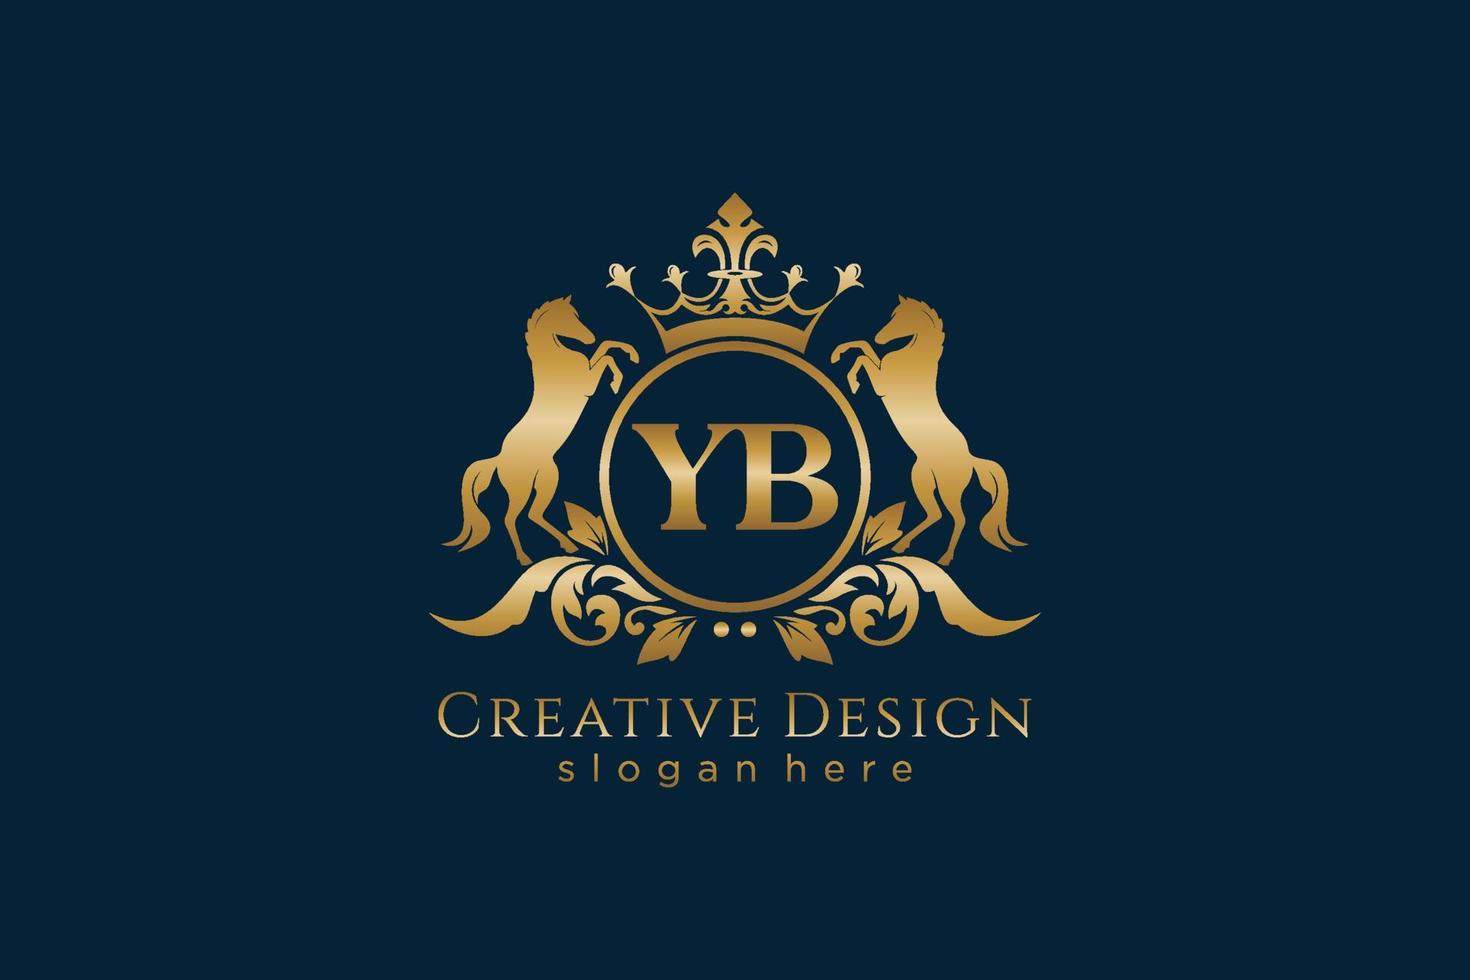 cresta dorada retro yb inicial con círculo y dos caballos, plantilla de insignia con pergaminos y corona real - perfecto para proyectos de marca de lujo vector